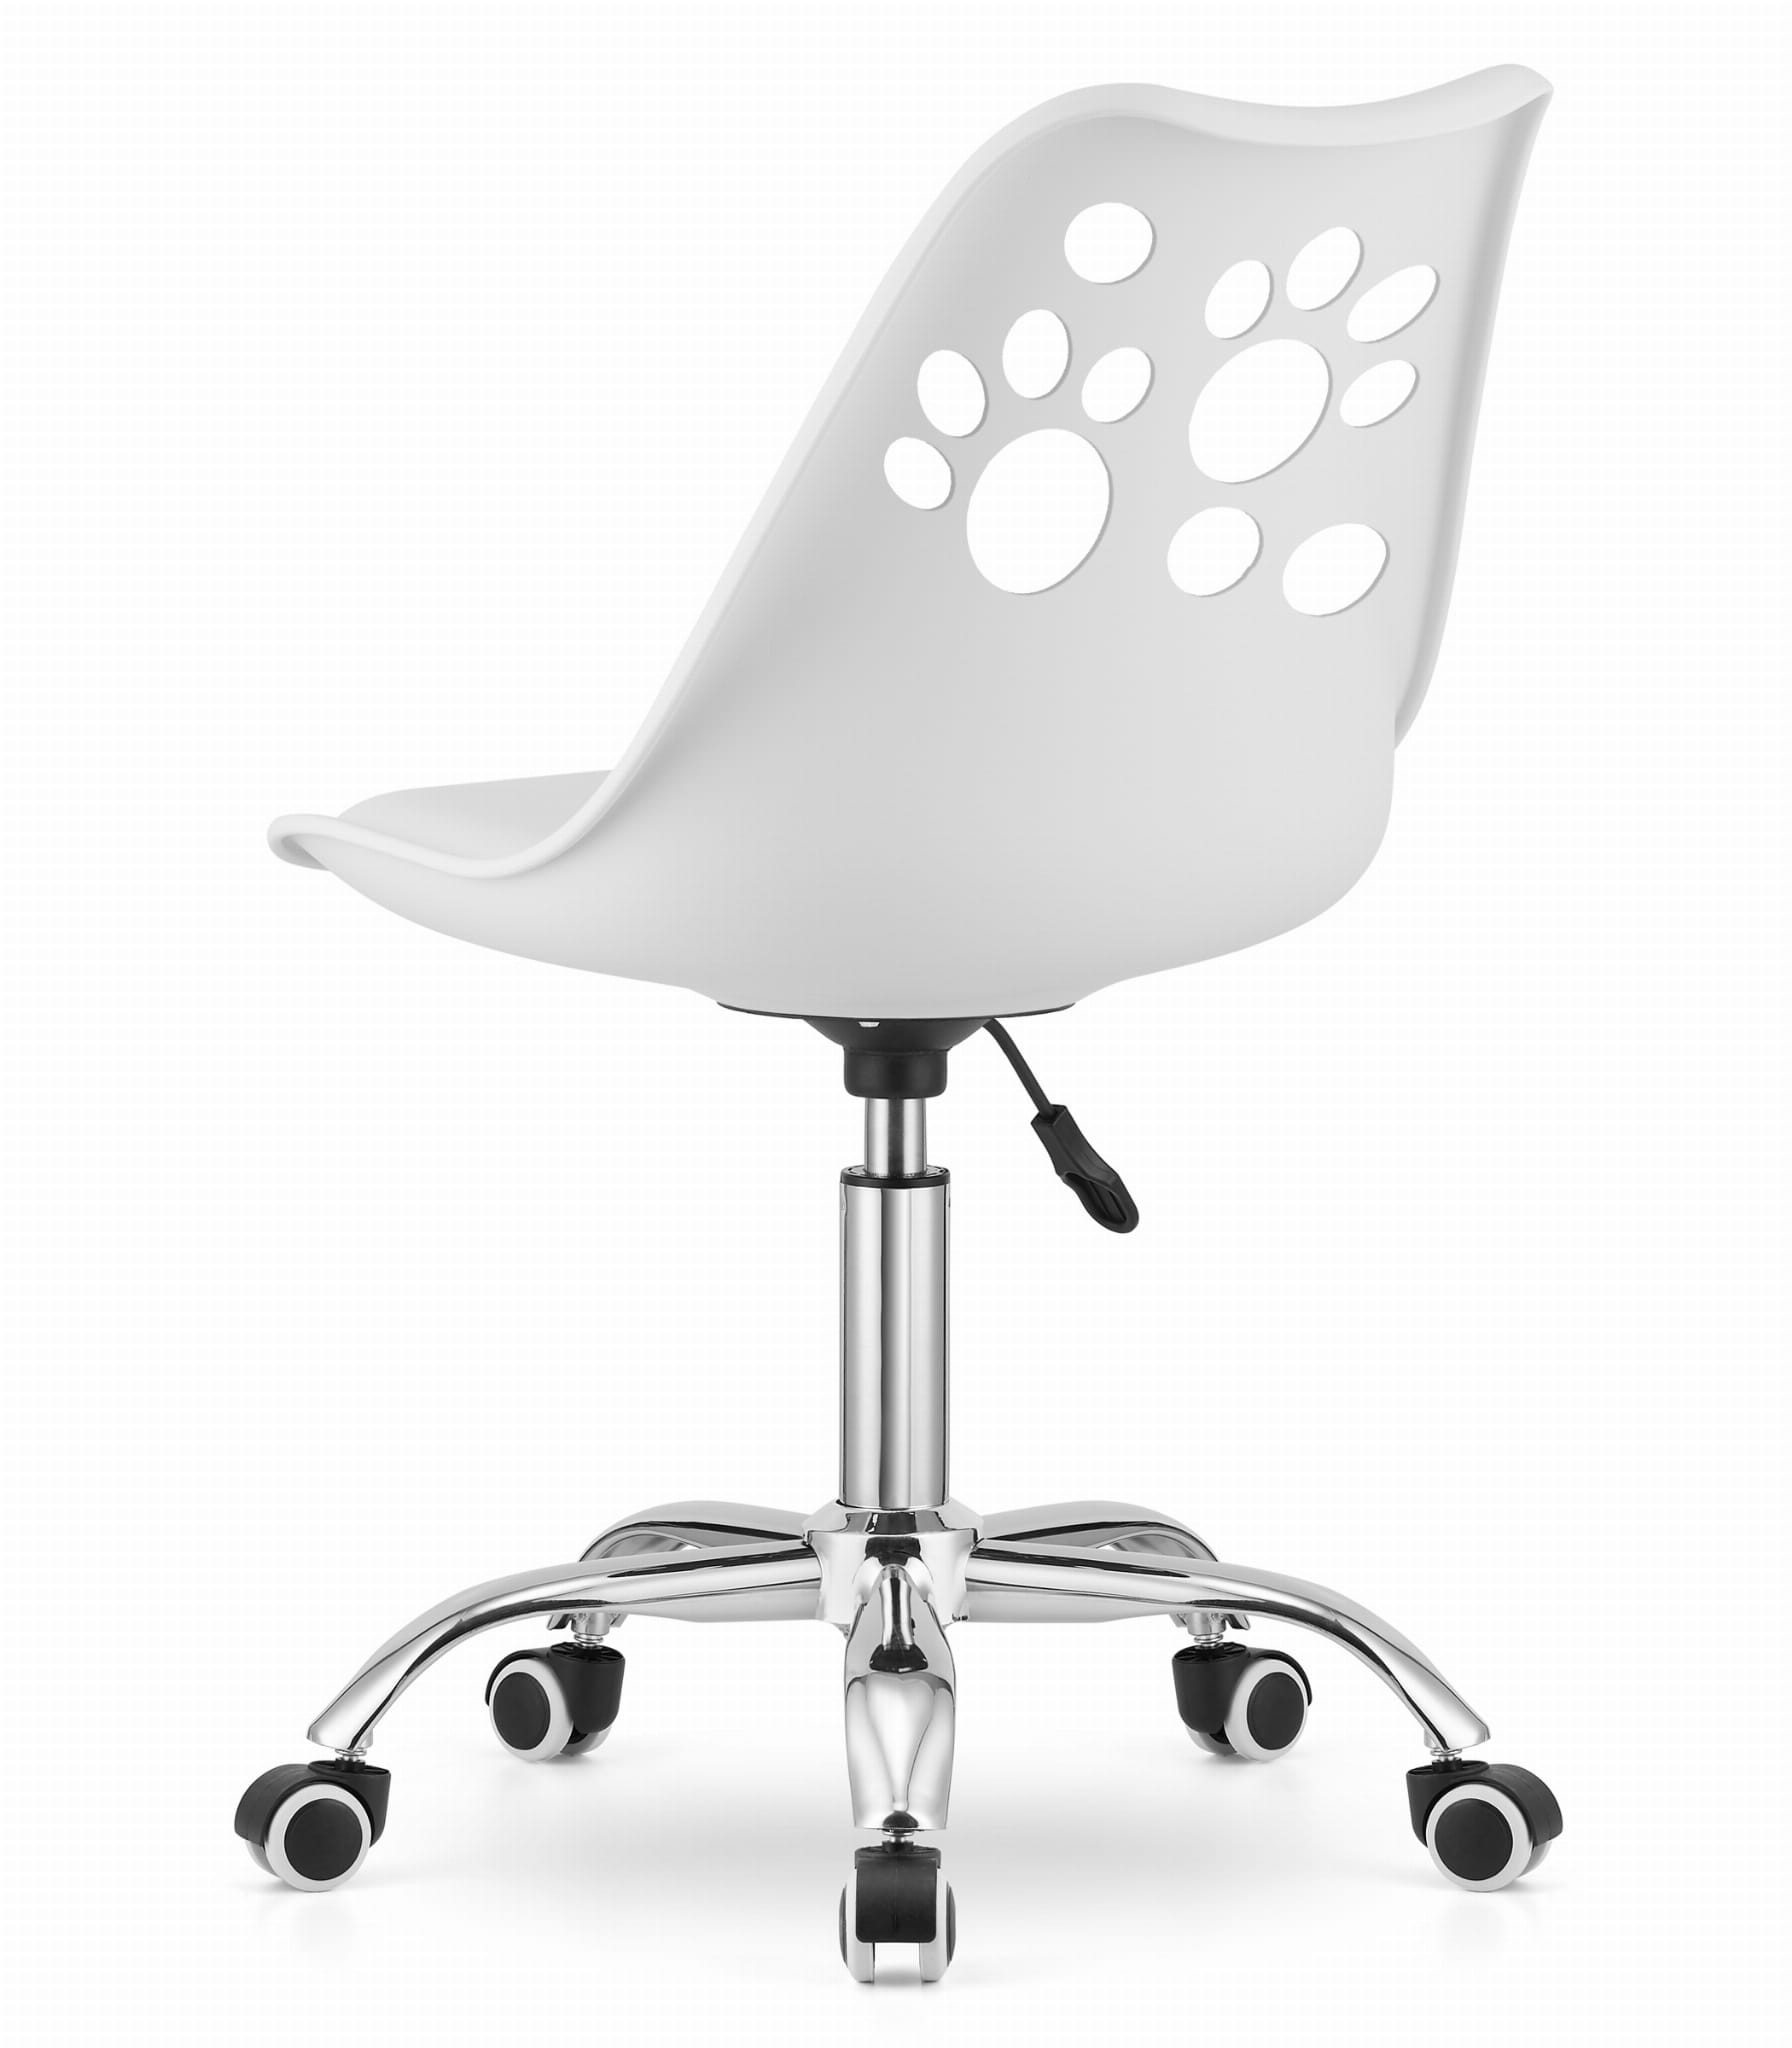 Otočná židle PRINT - bílá